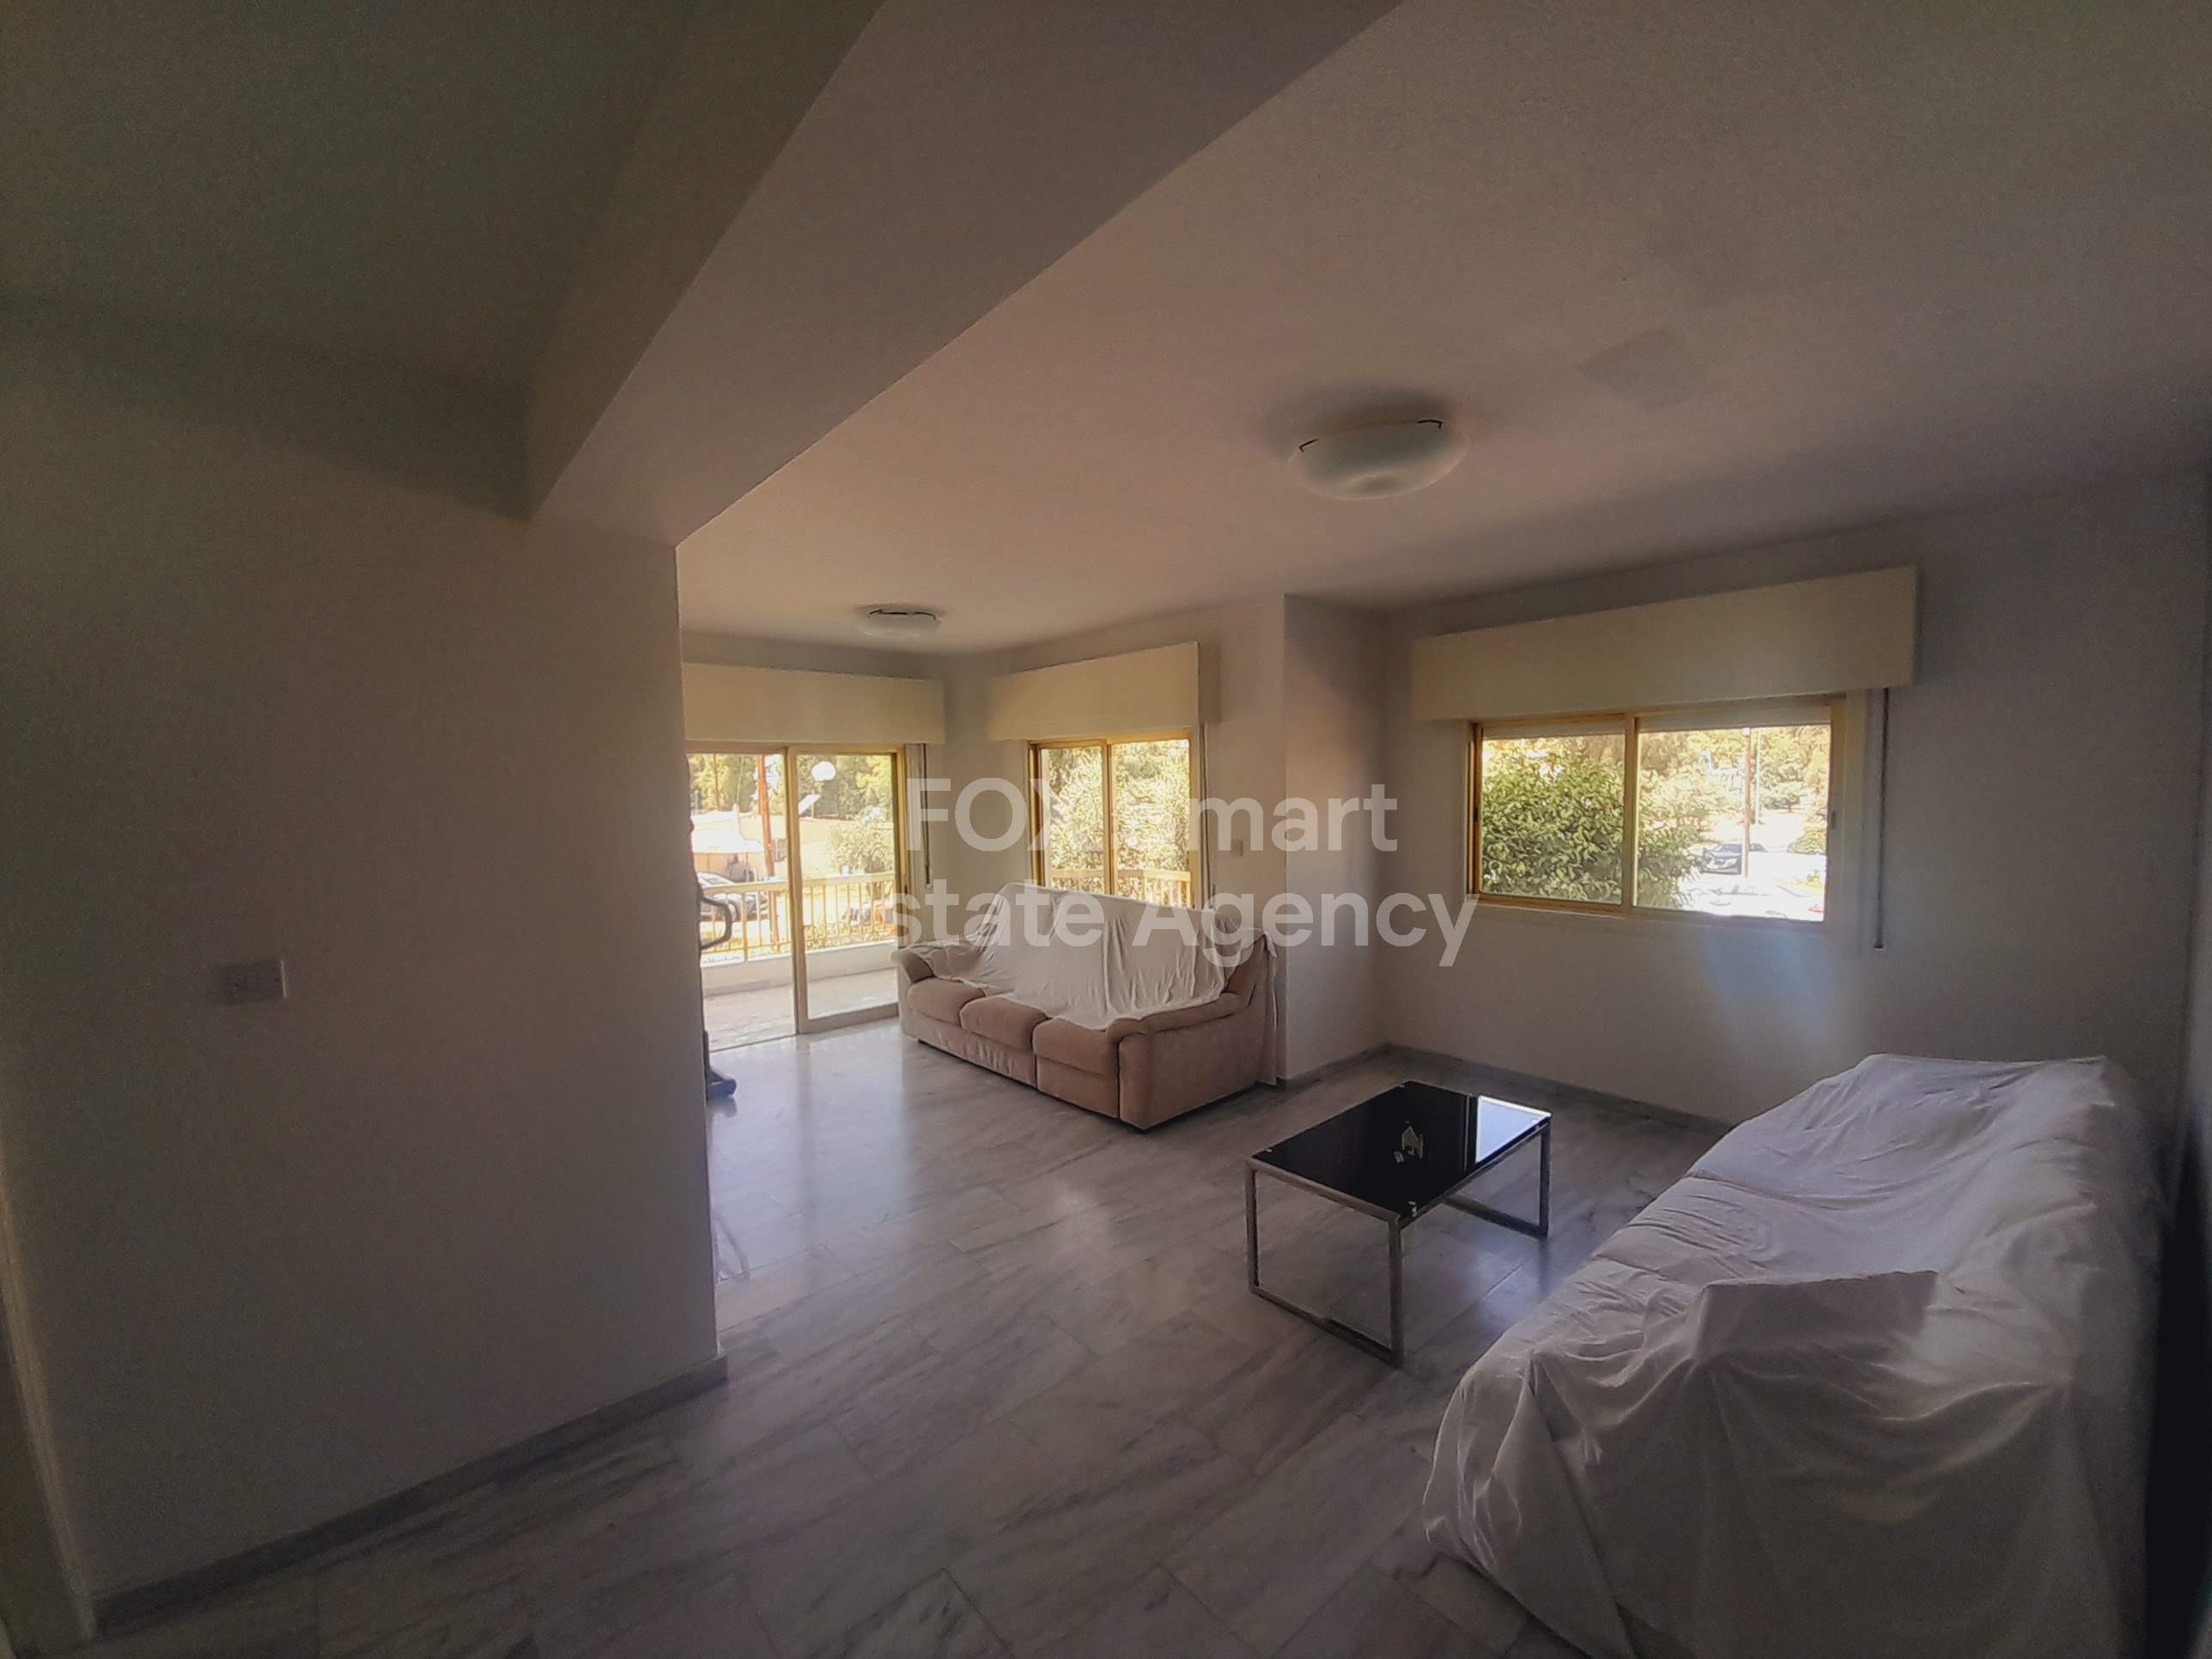 Apartment, For Sale, Nicosia, Strovolos, Chryseleousa  3 Bed.....